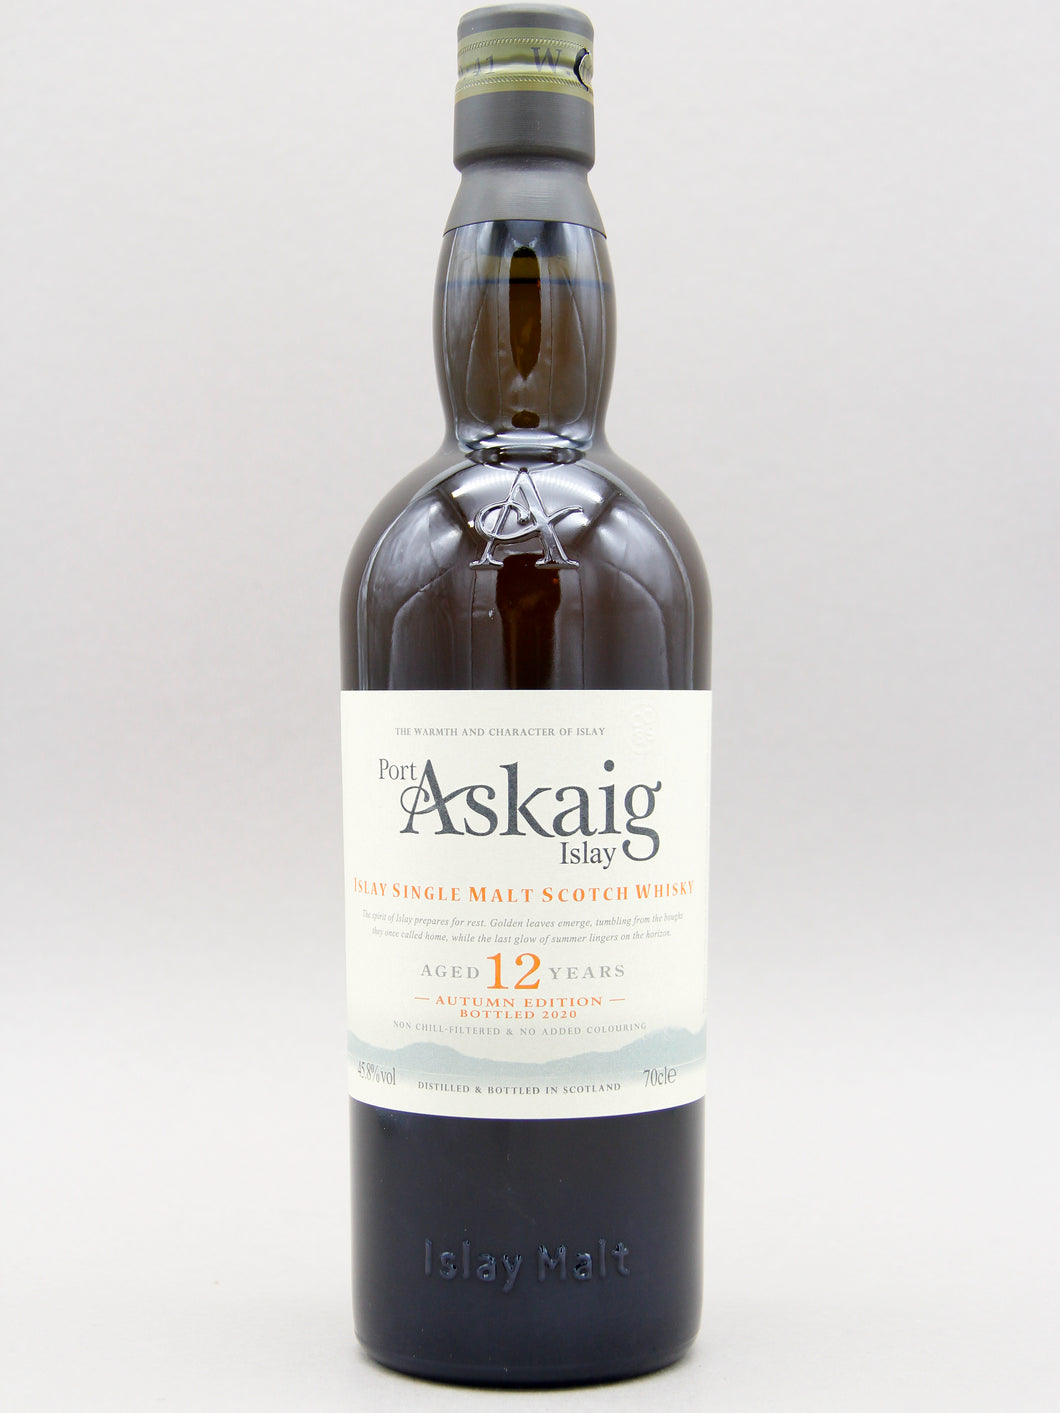 Port Askaig 12 Year Old, Autumn Edition, Islay Single Malt Scotch Whisky (45.8%, 70cl)